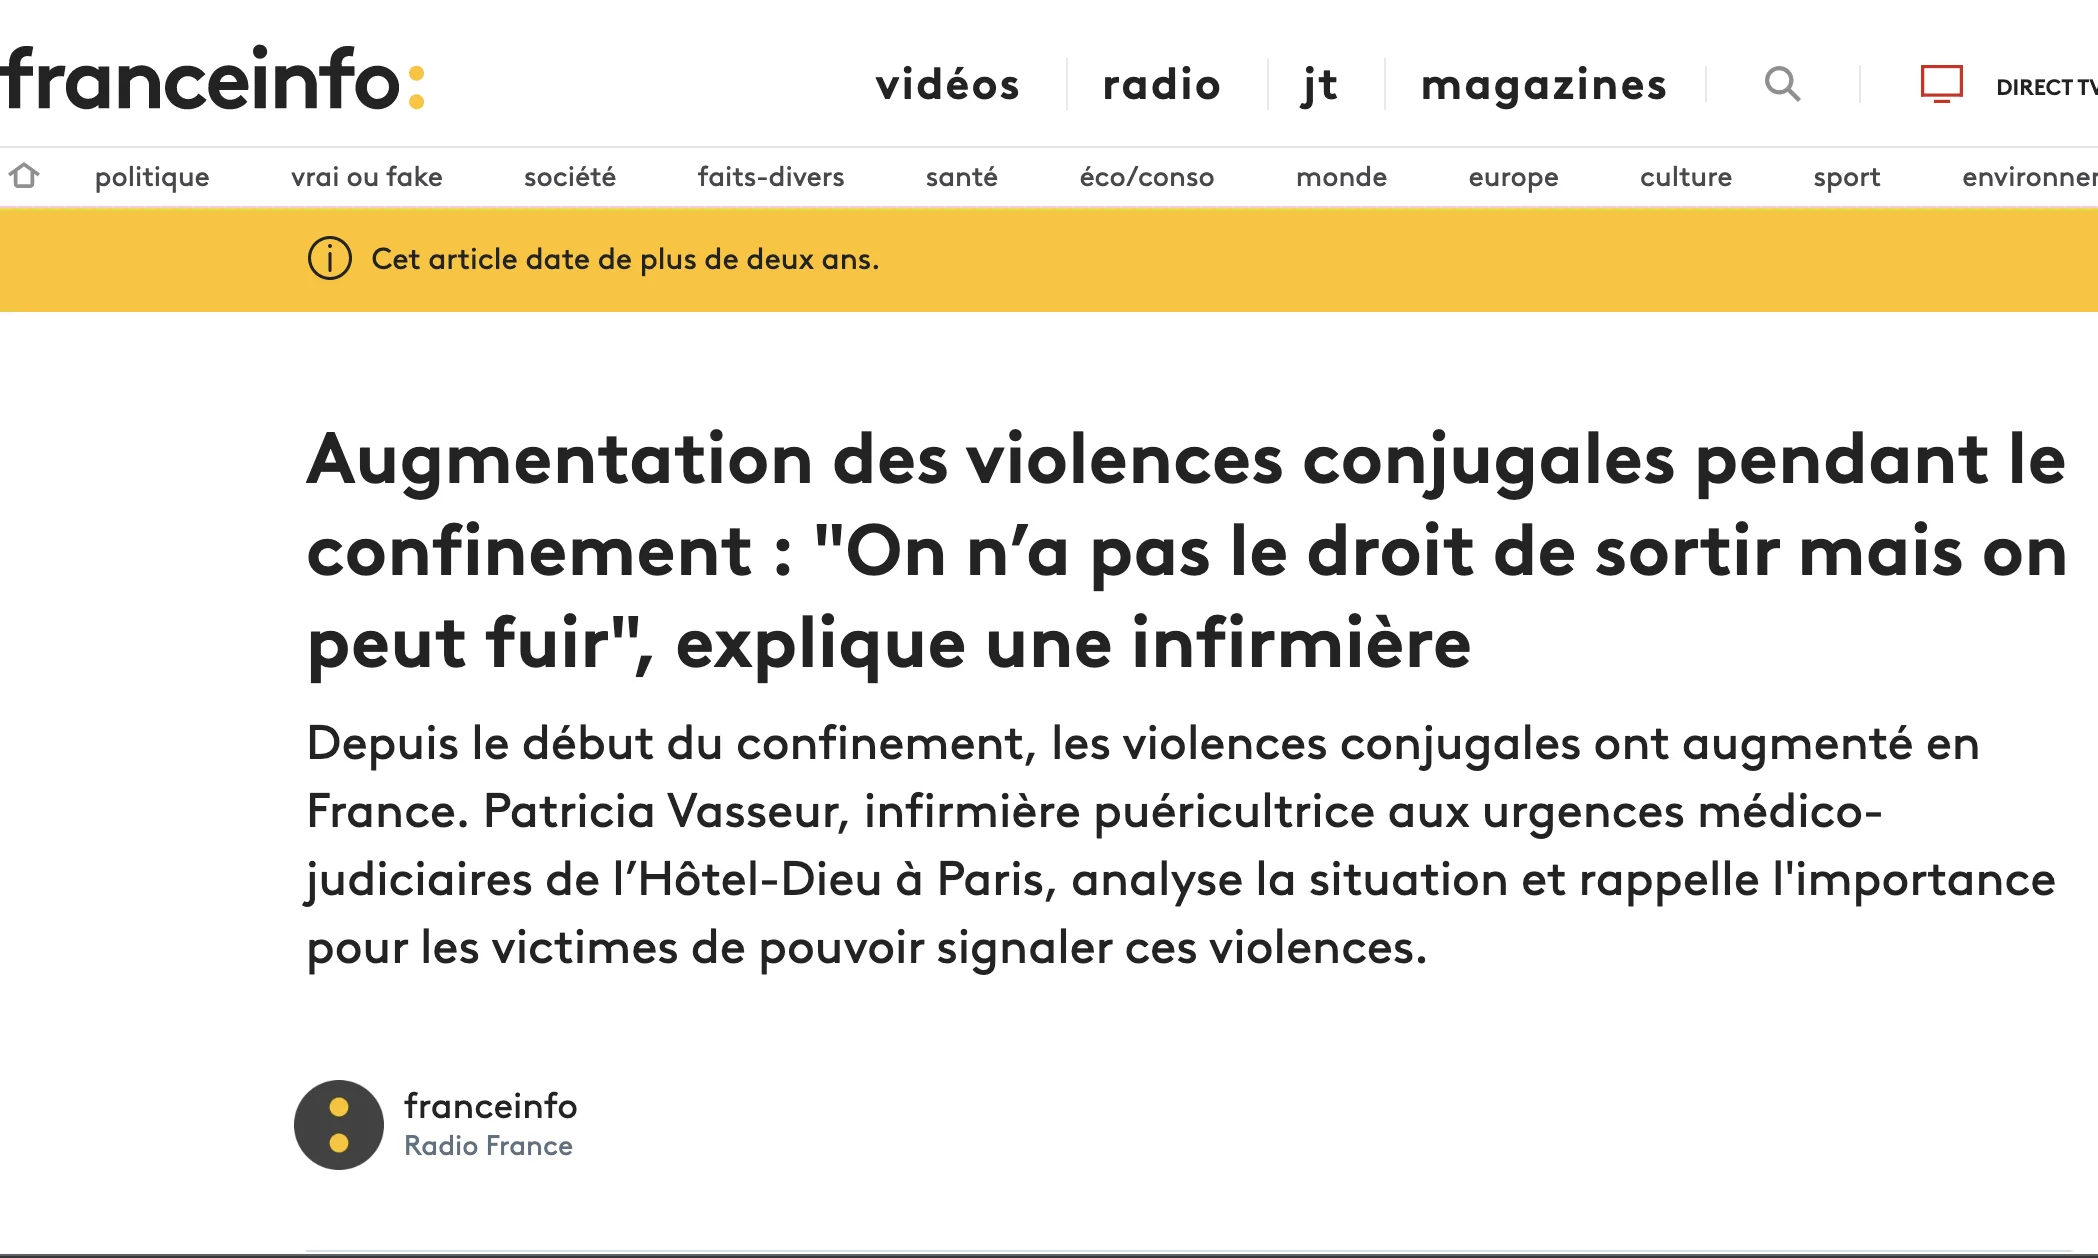 France Info - Augmentation des violences conjugales pendant le confinement